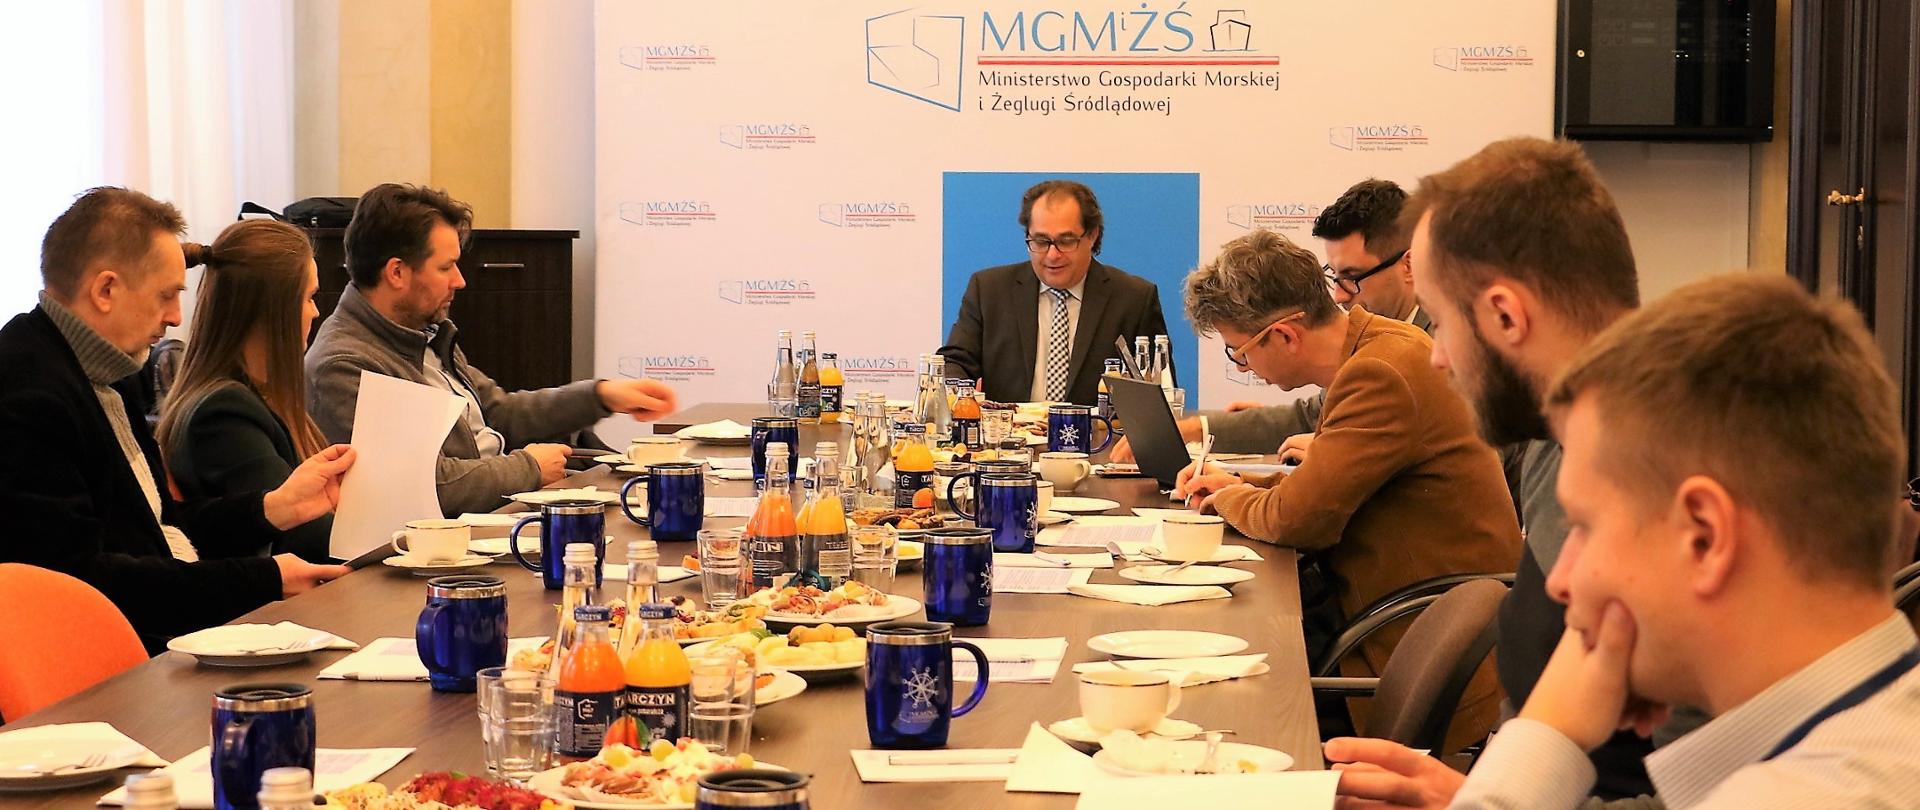 Uczestnicy spotkania siedzą przy wspólnym stole. Spotkaniu przewodniczy minister M. Gróbarczyk